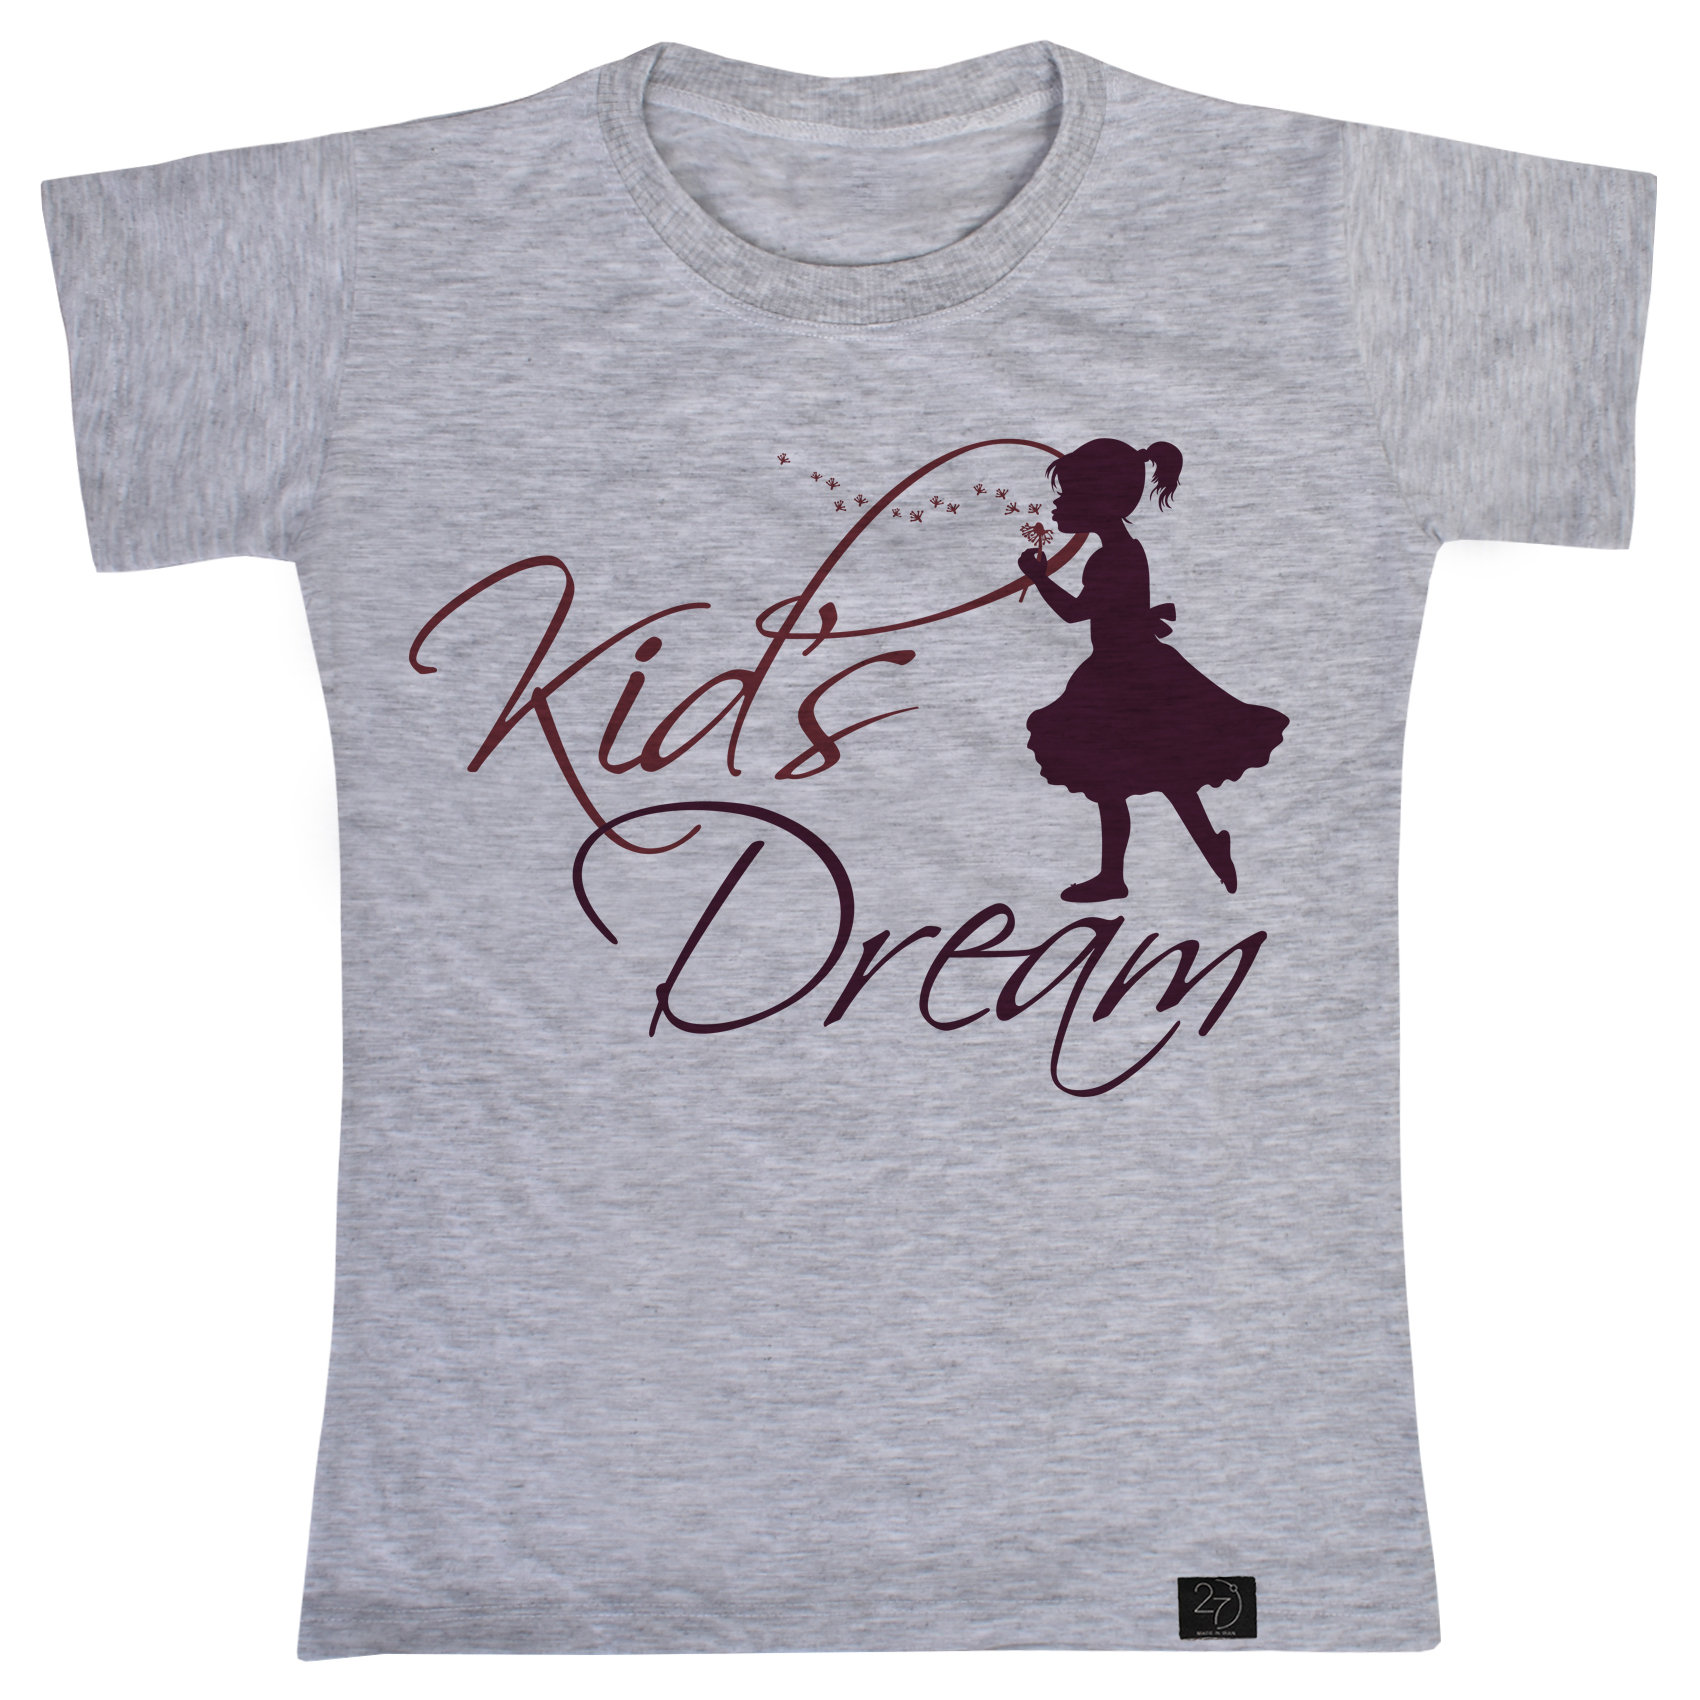 تی شرت دخترانه 27 طرح Kids dream کد B37